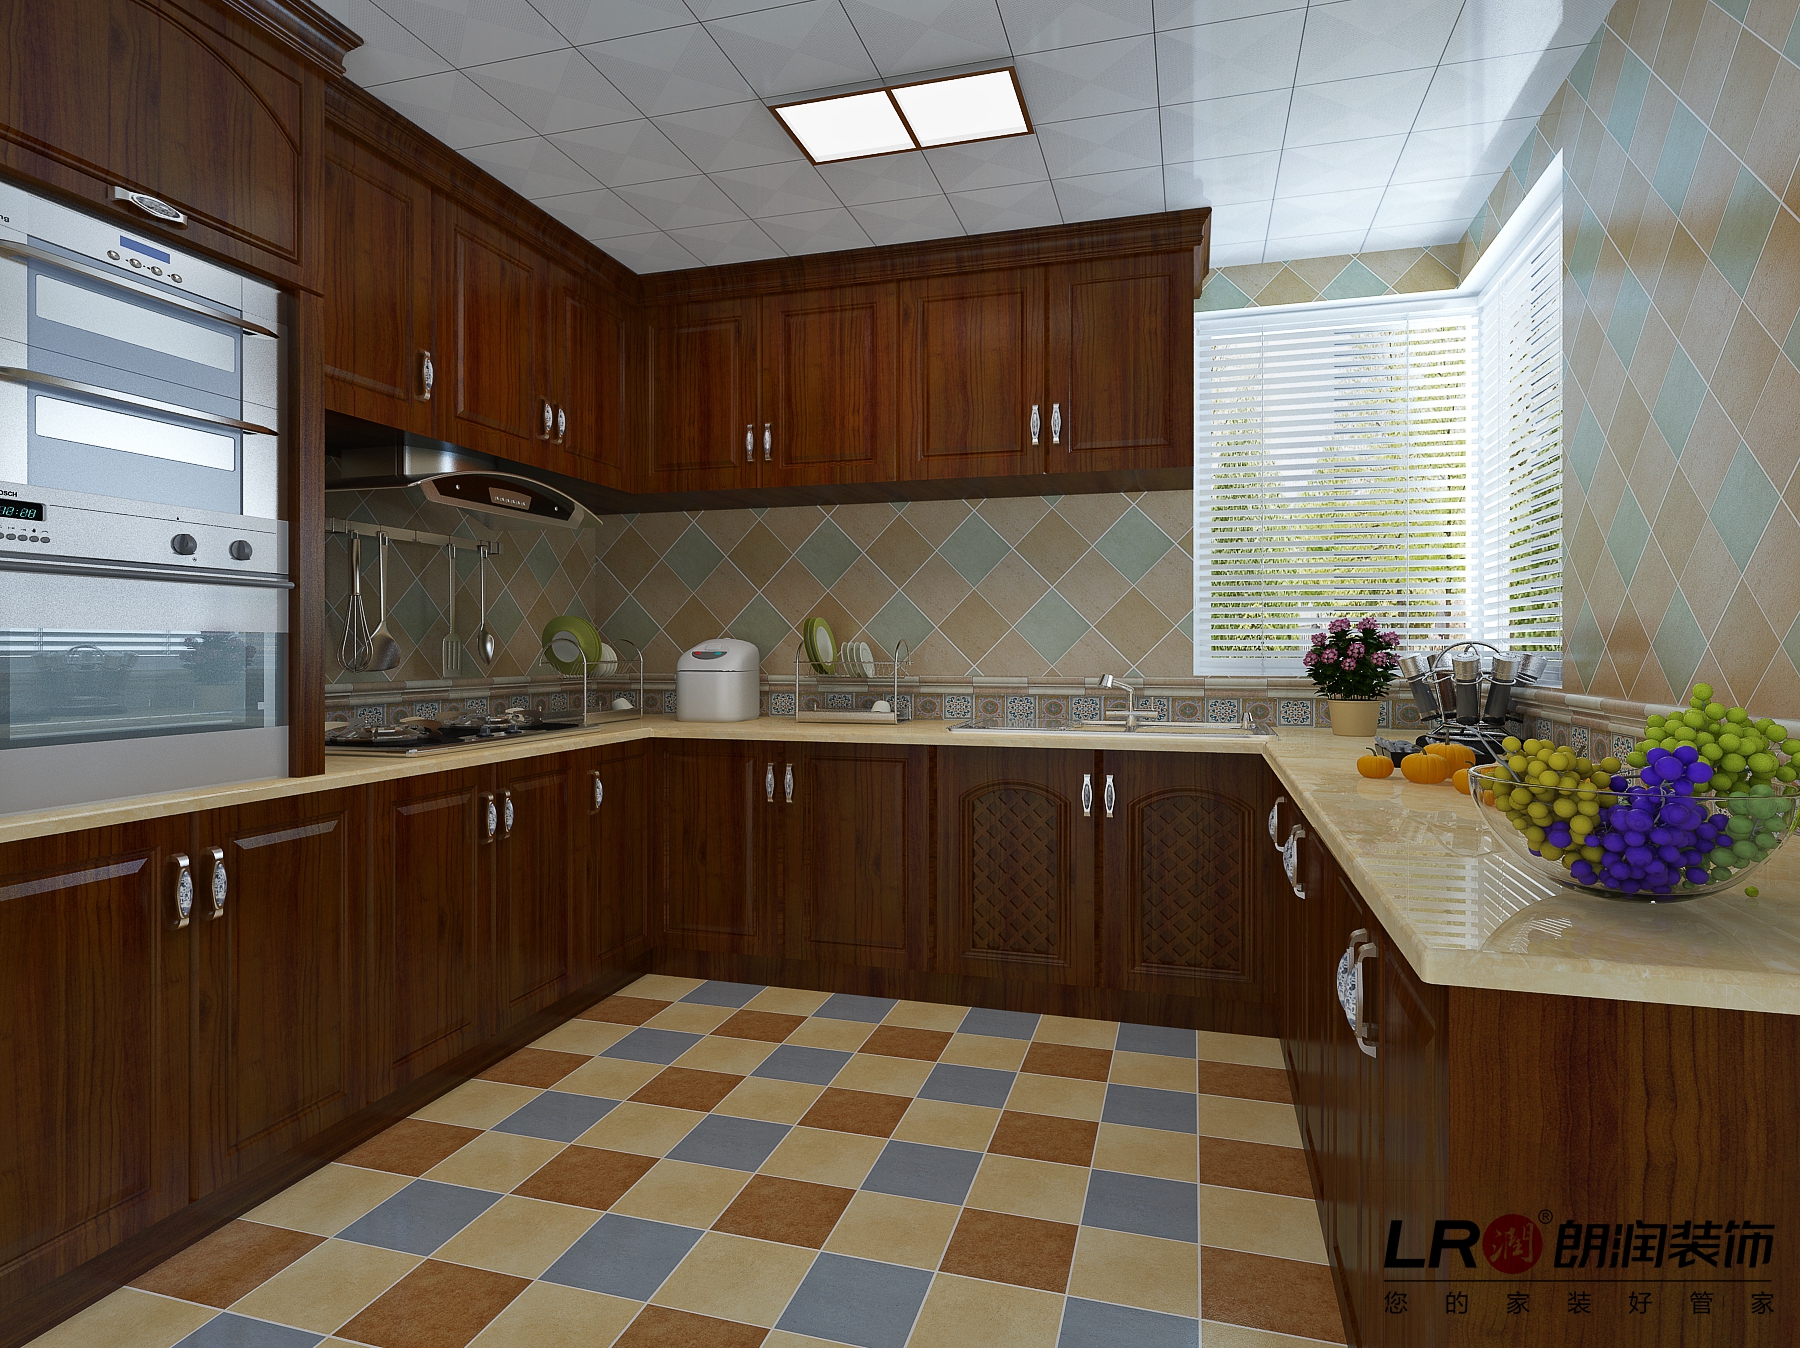 厨房用色彩浓郁的小方格墙地砖来强调美式风格的格调,搭配深色实木